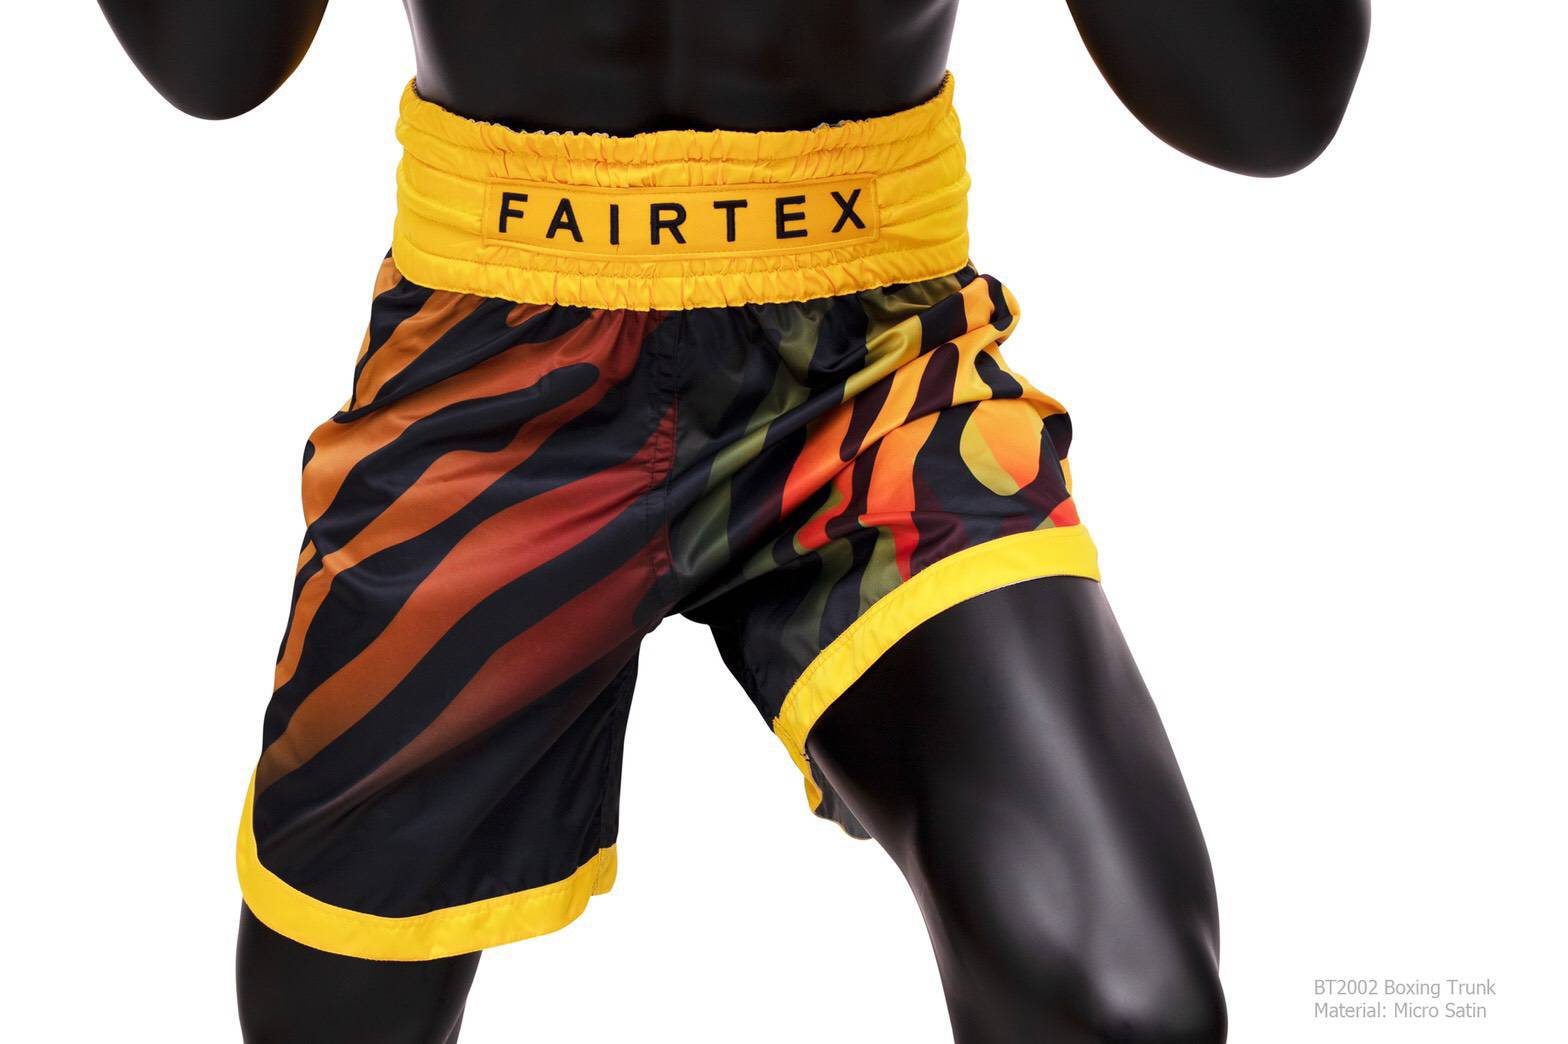 Fairtex Boxing Shorts- BT2002 Tiger Fairtex